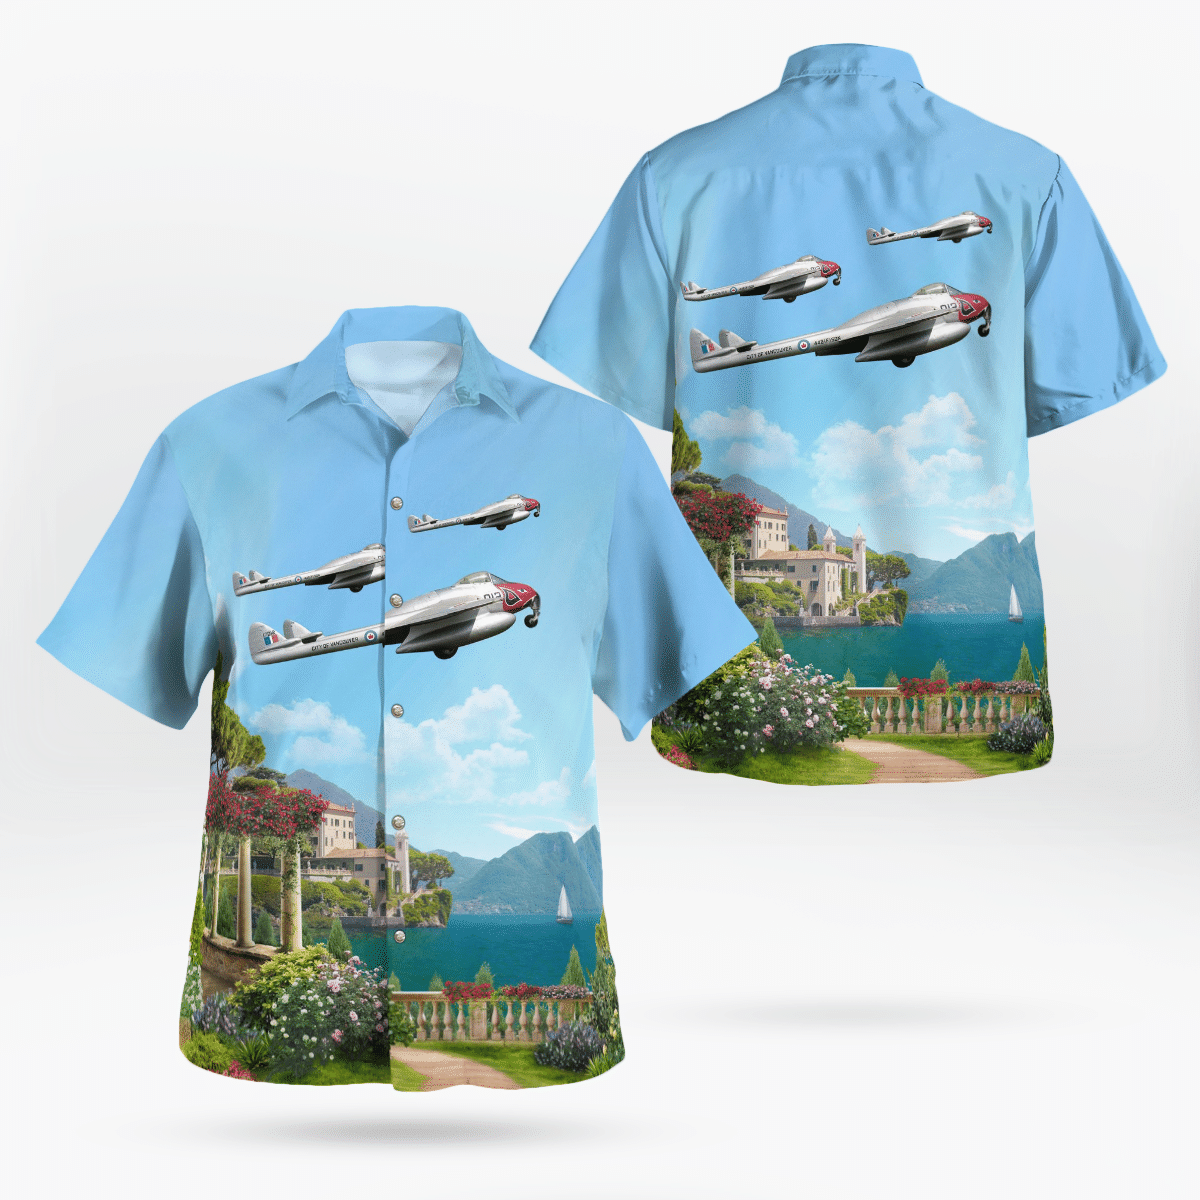 Best Hawaiian shirts 2022 321